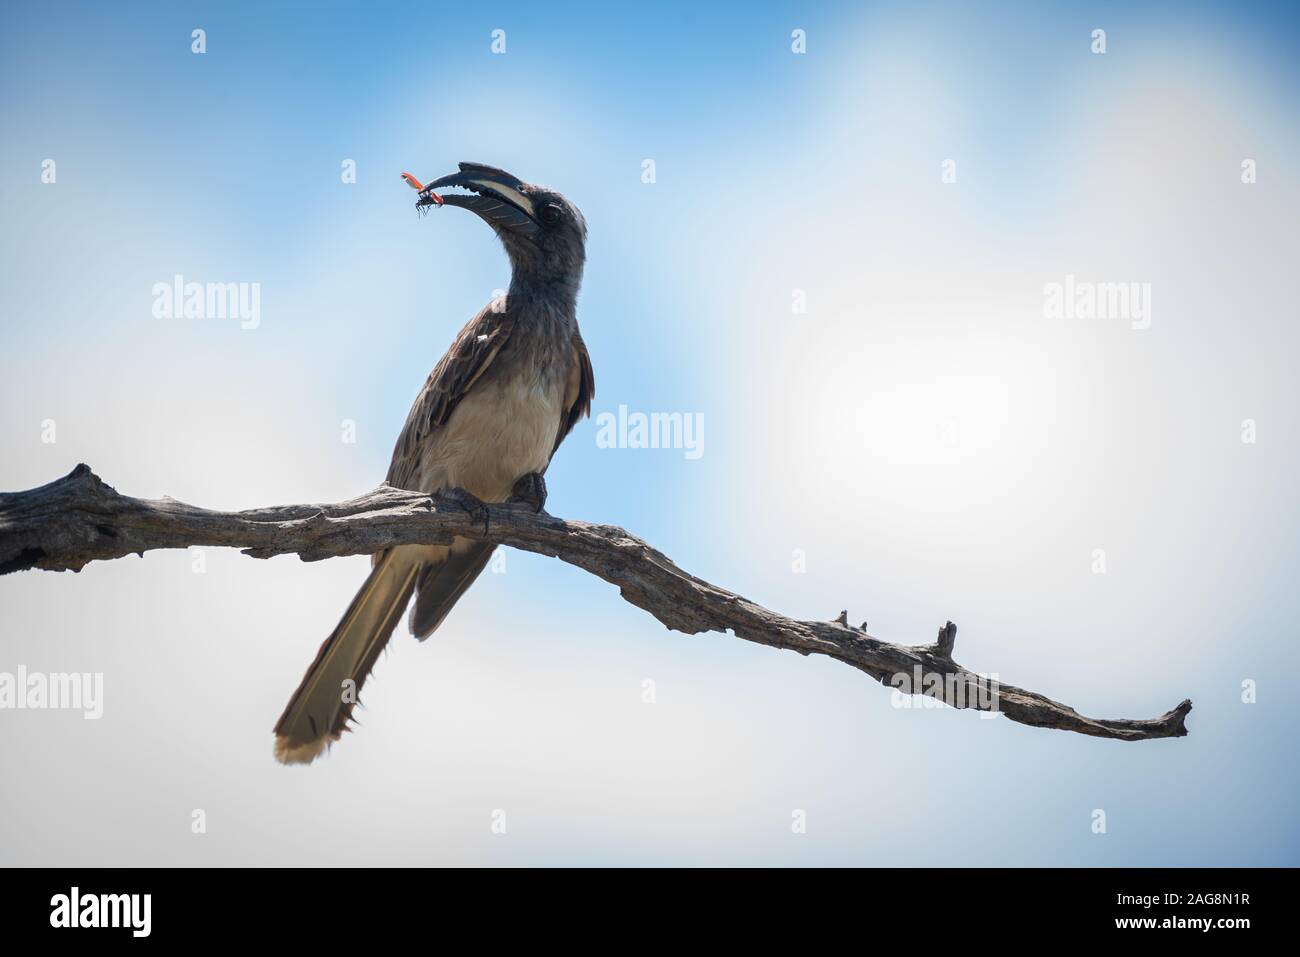 Parco Nazionale di Kruger, Sud Africa. Un africano grigio Hornbill - Tockus nasutus - si siede su un ramo secco con un insetto alato detenute nel suo becco Foto Stock